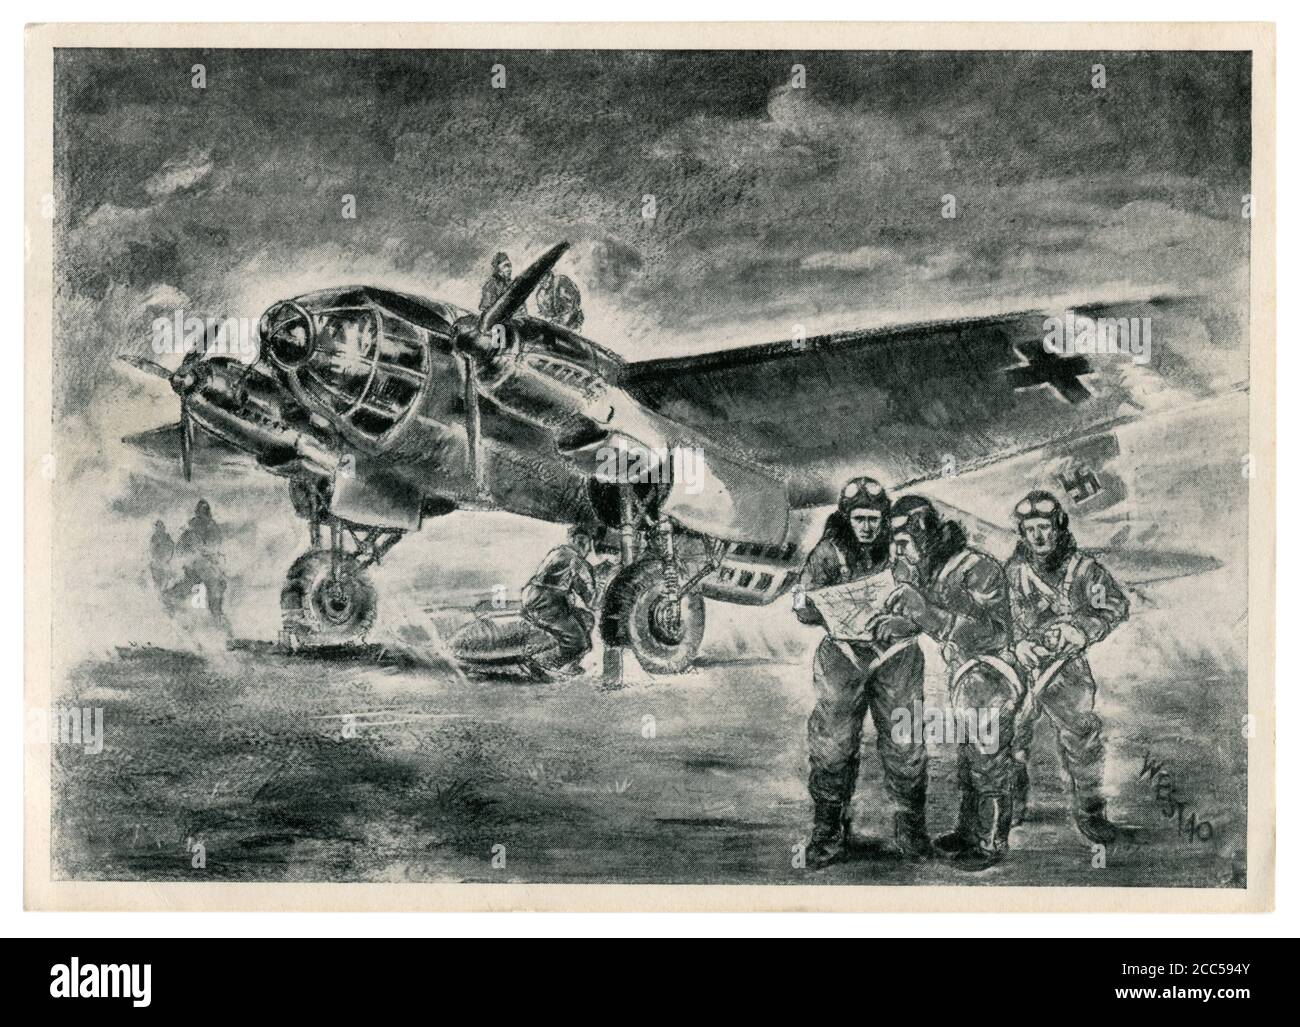 Deutsche historische Postkarte: Technisches Personal bereitet den Heinkel He 111 Bomber für den Kampfflug vor. Die Crew studiert den Flugplan, 2. weltkrieg 1940 Stockfoto